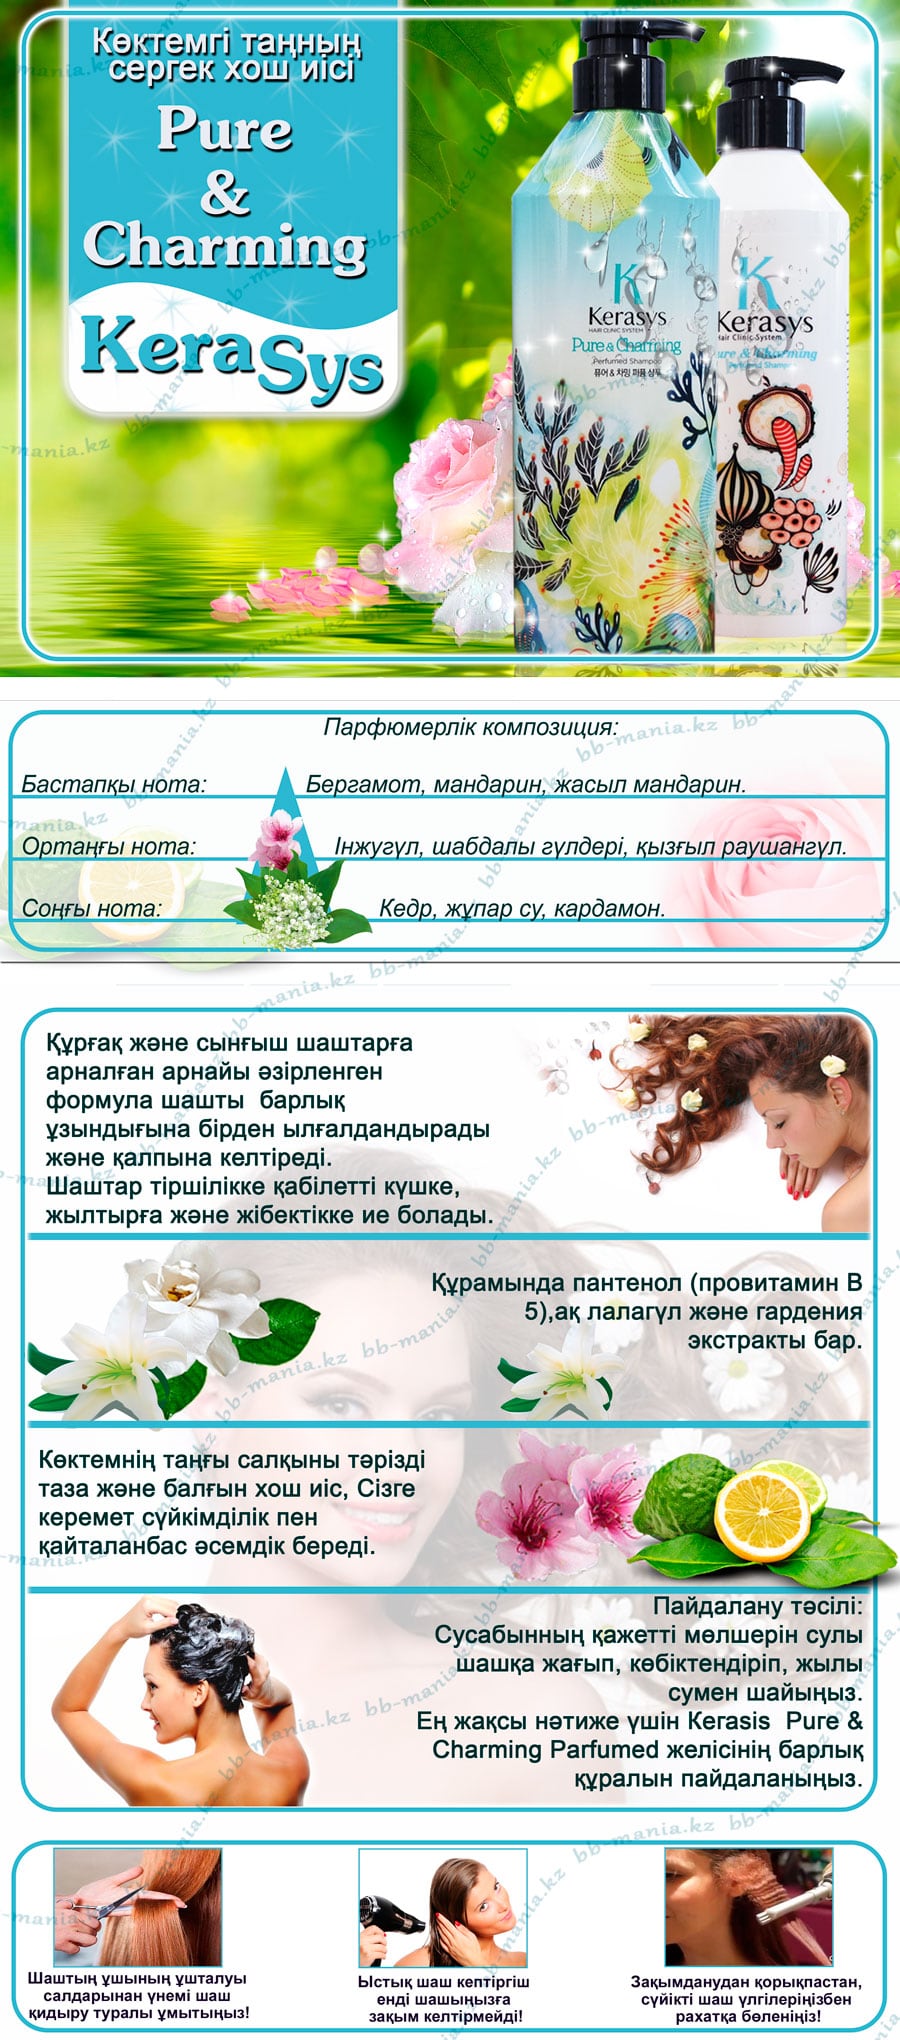 Kerasys-Pure-&-Charming-Parfumed-Shampoo-kerasys-кз-min